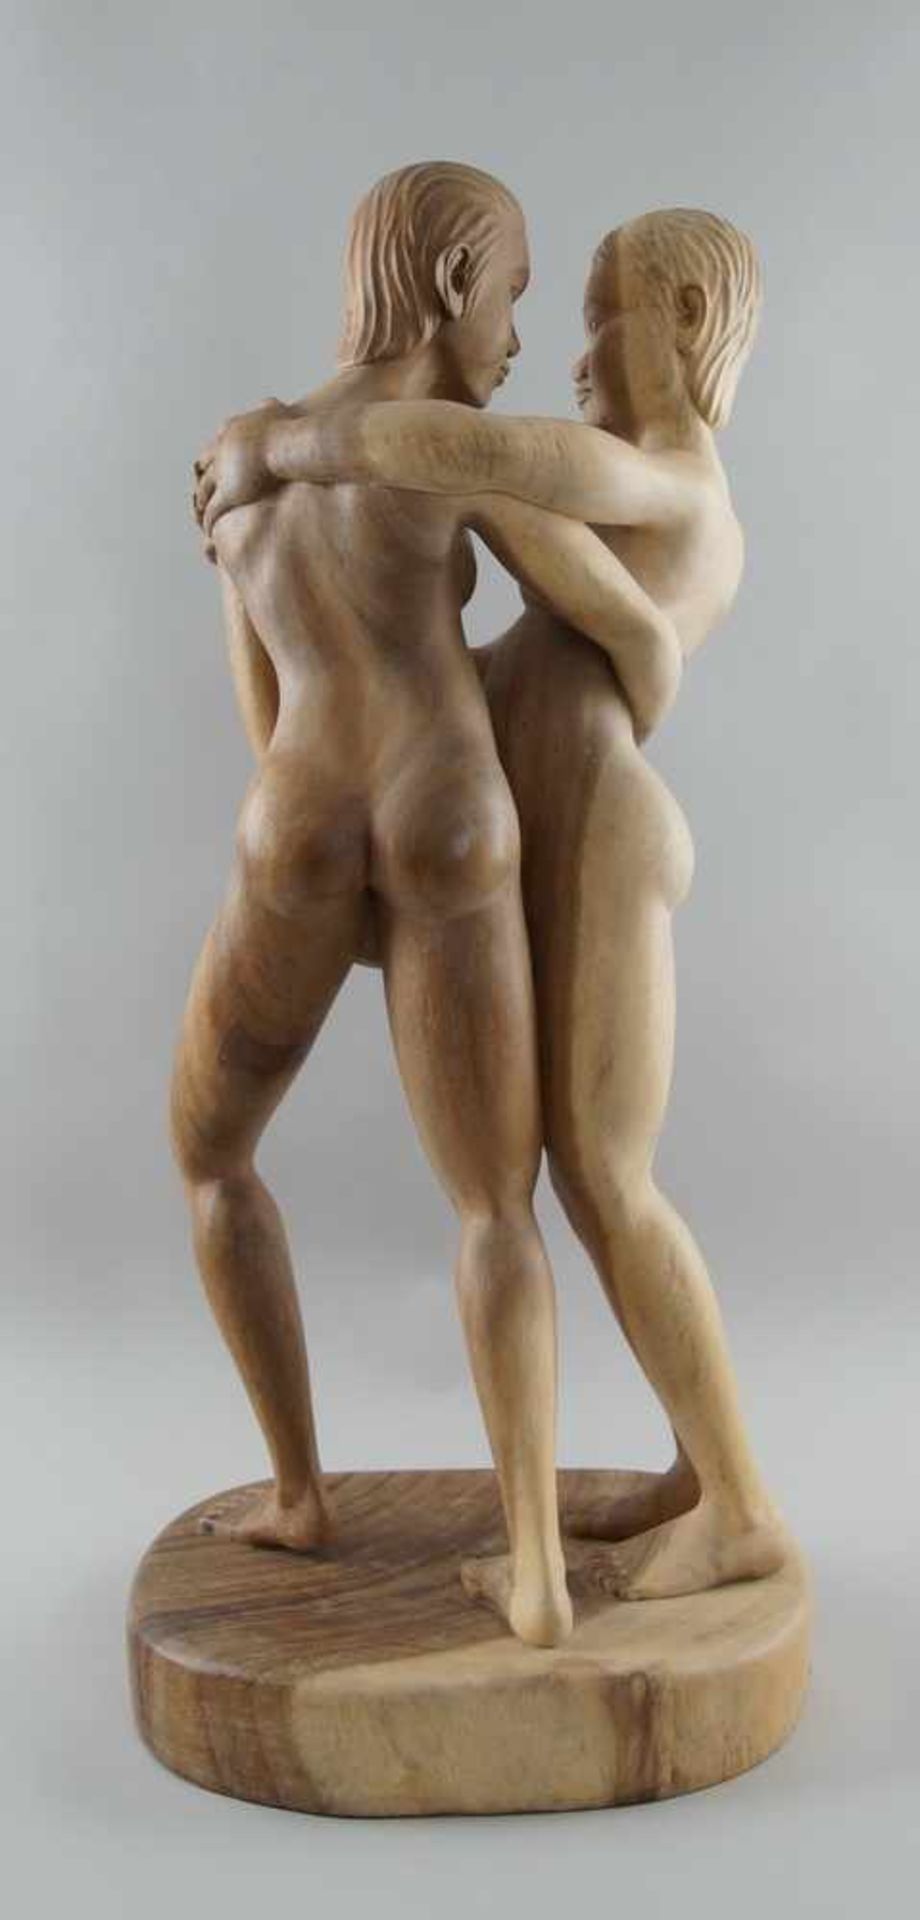 Männliches Paar, Akt, Holz geschnitzt, zwei Männer in erotischer Pose, H 80 cm cm - Bild 5 aus 5